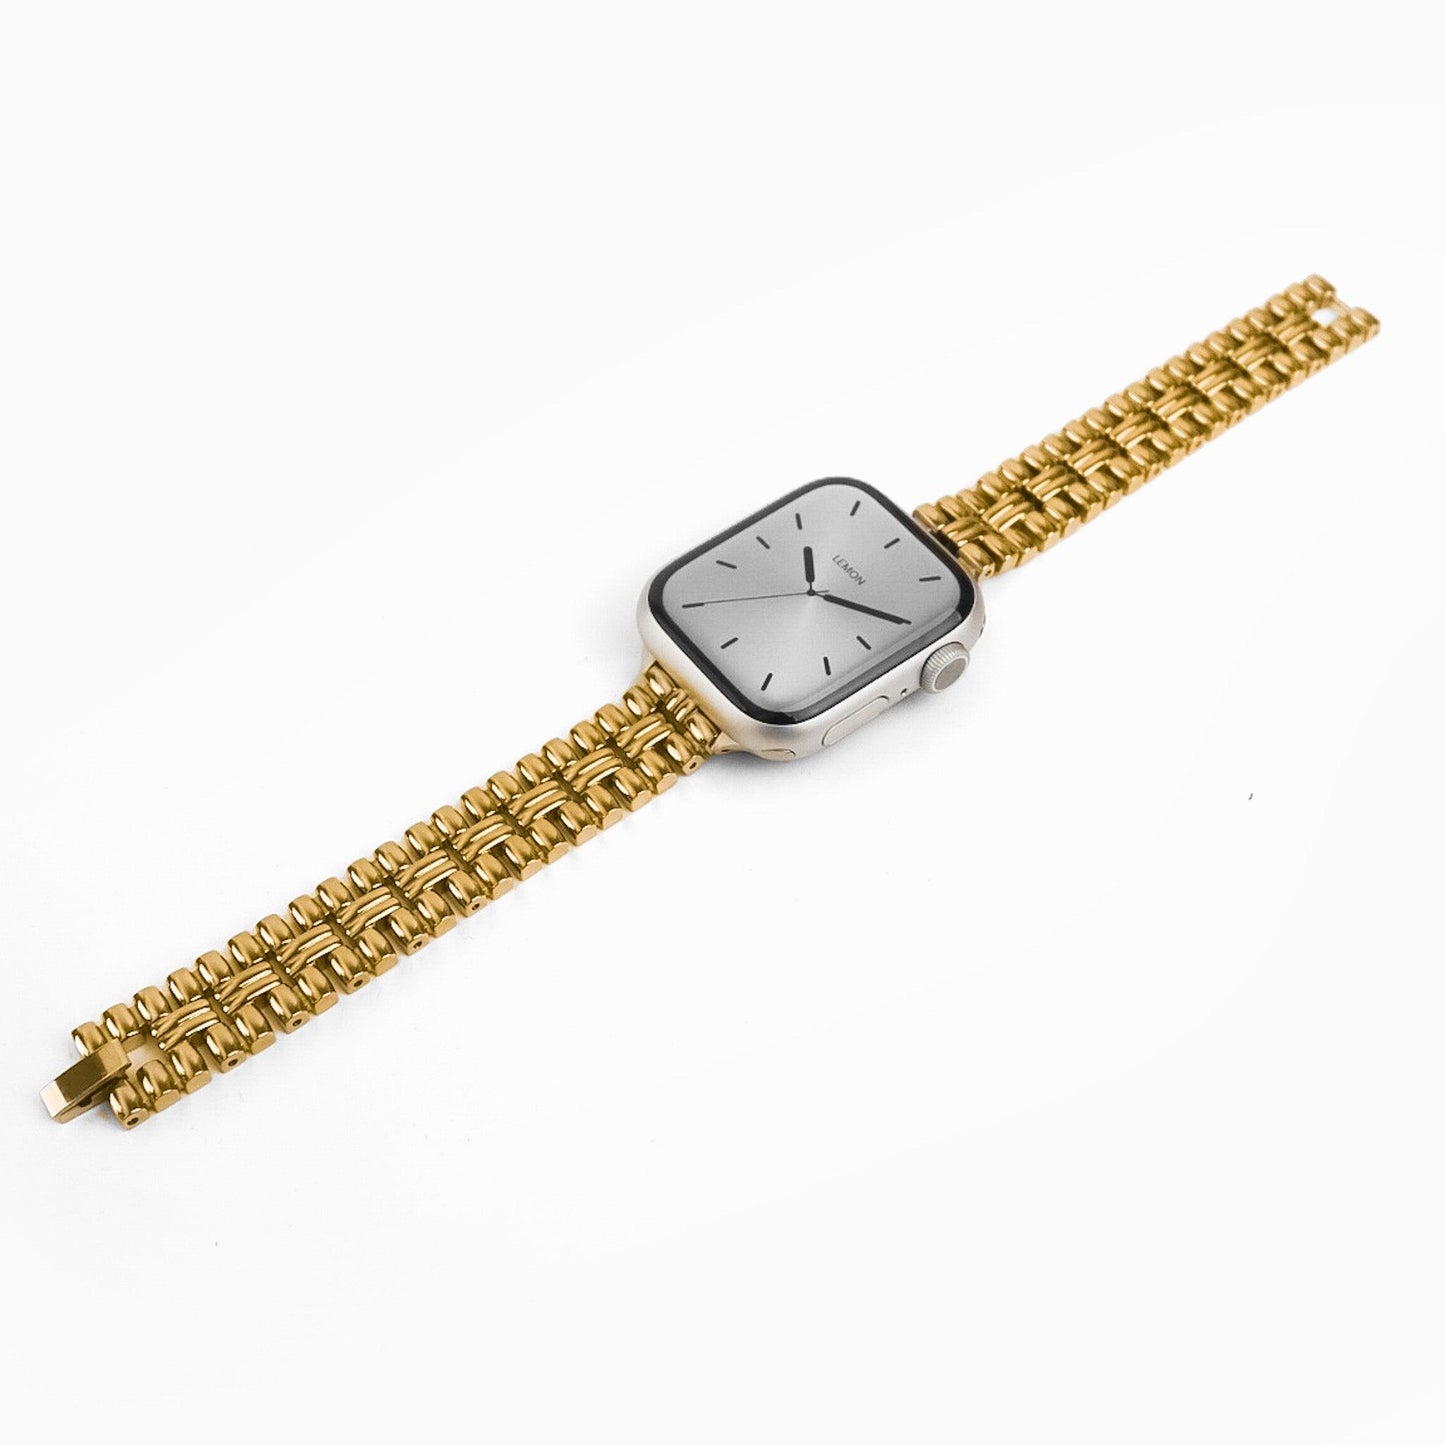 (St-Steel) Flowerwall Apple Watch Bracelet - 18k Gold Plated